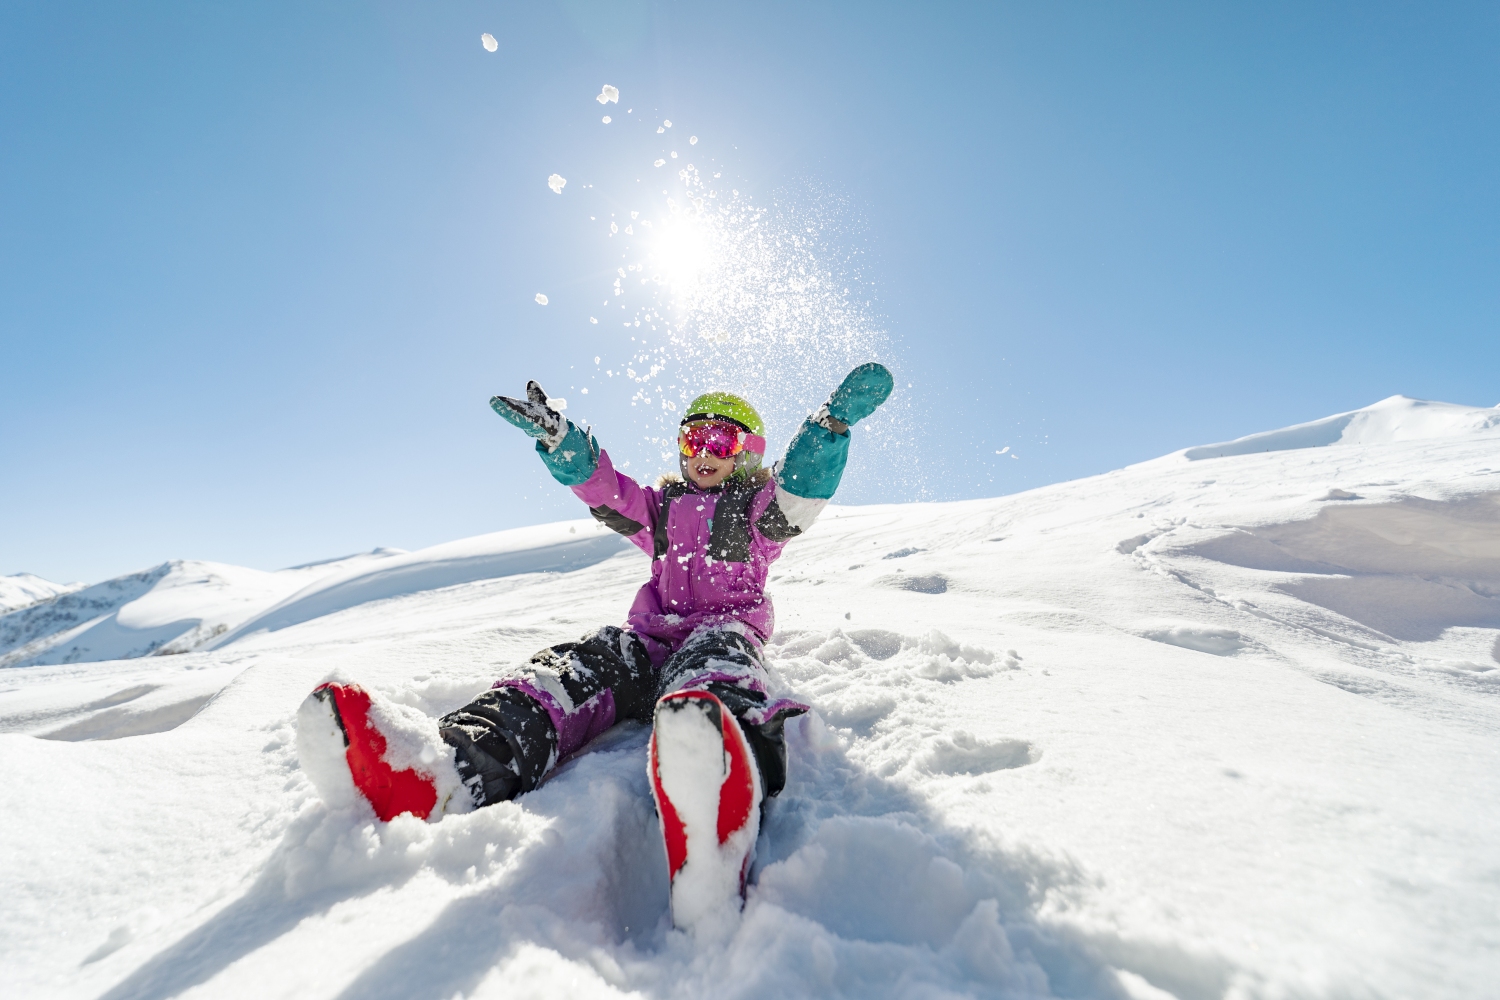 Long term ski equipment rental - Whistler Message Board - Tripadvisor